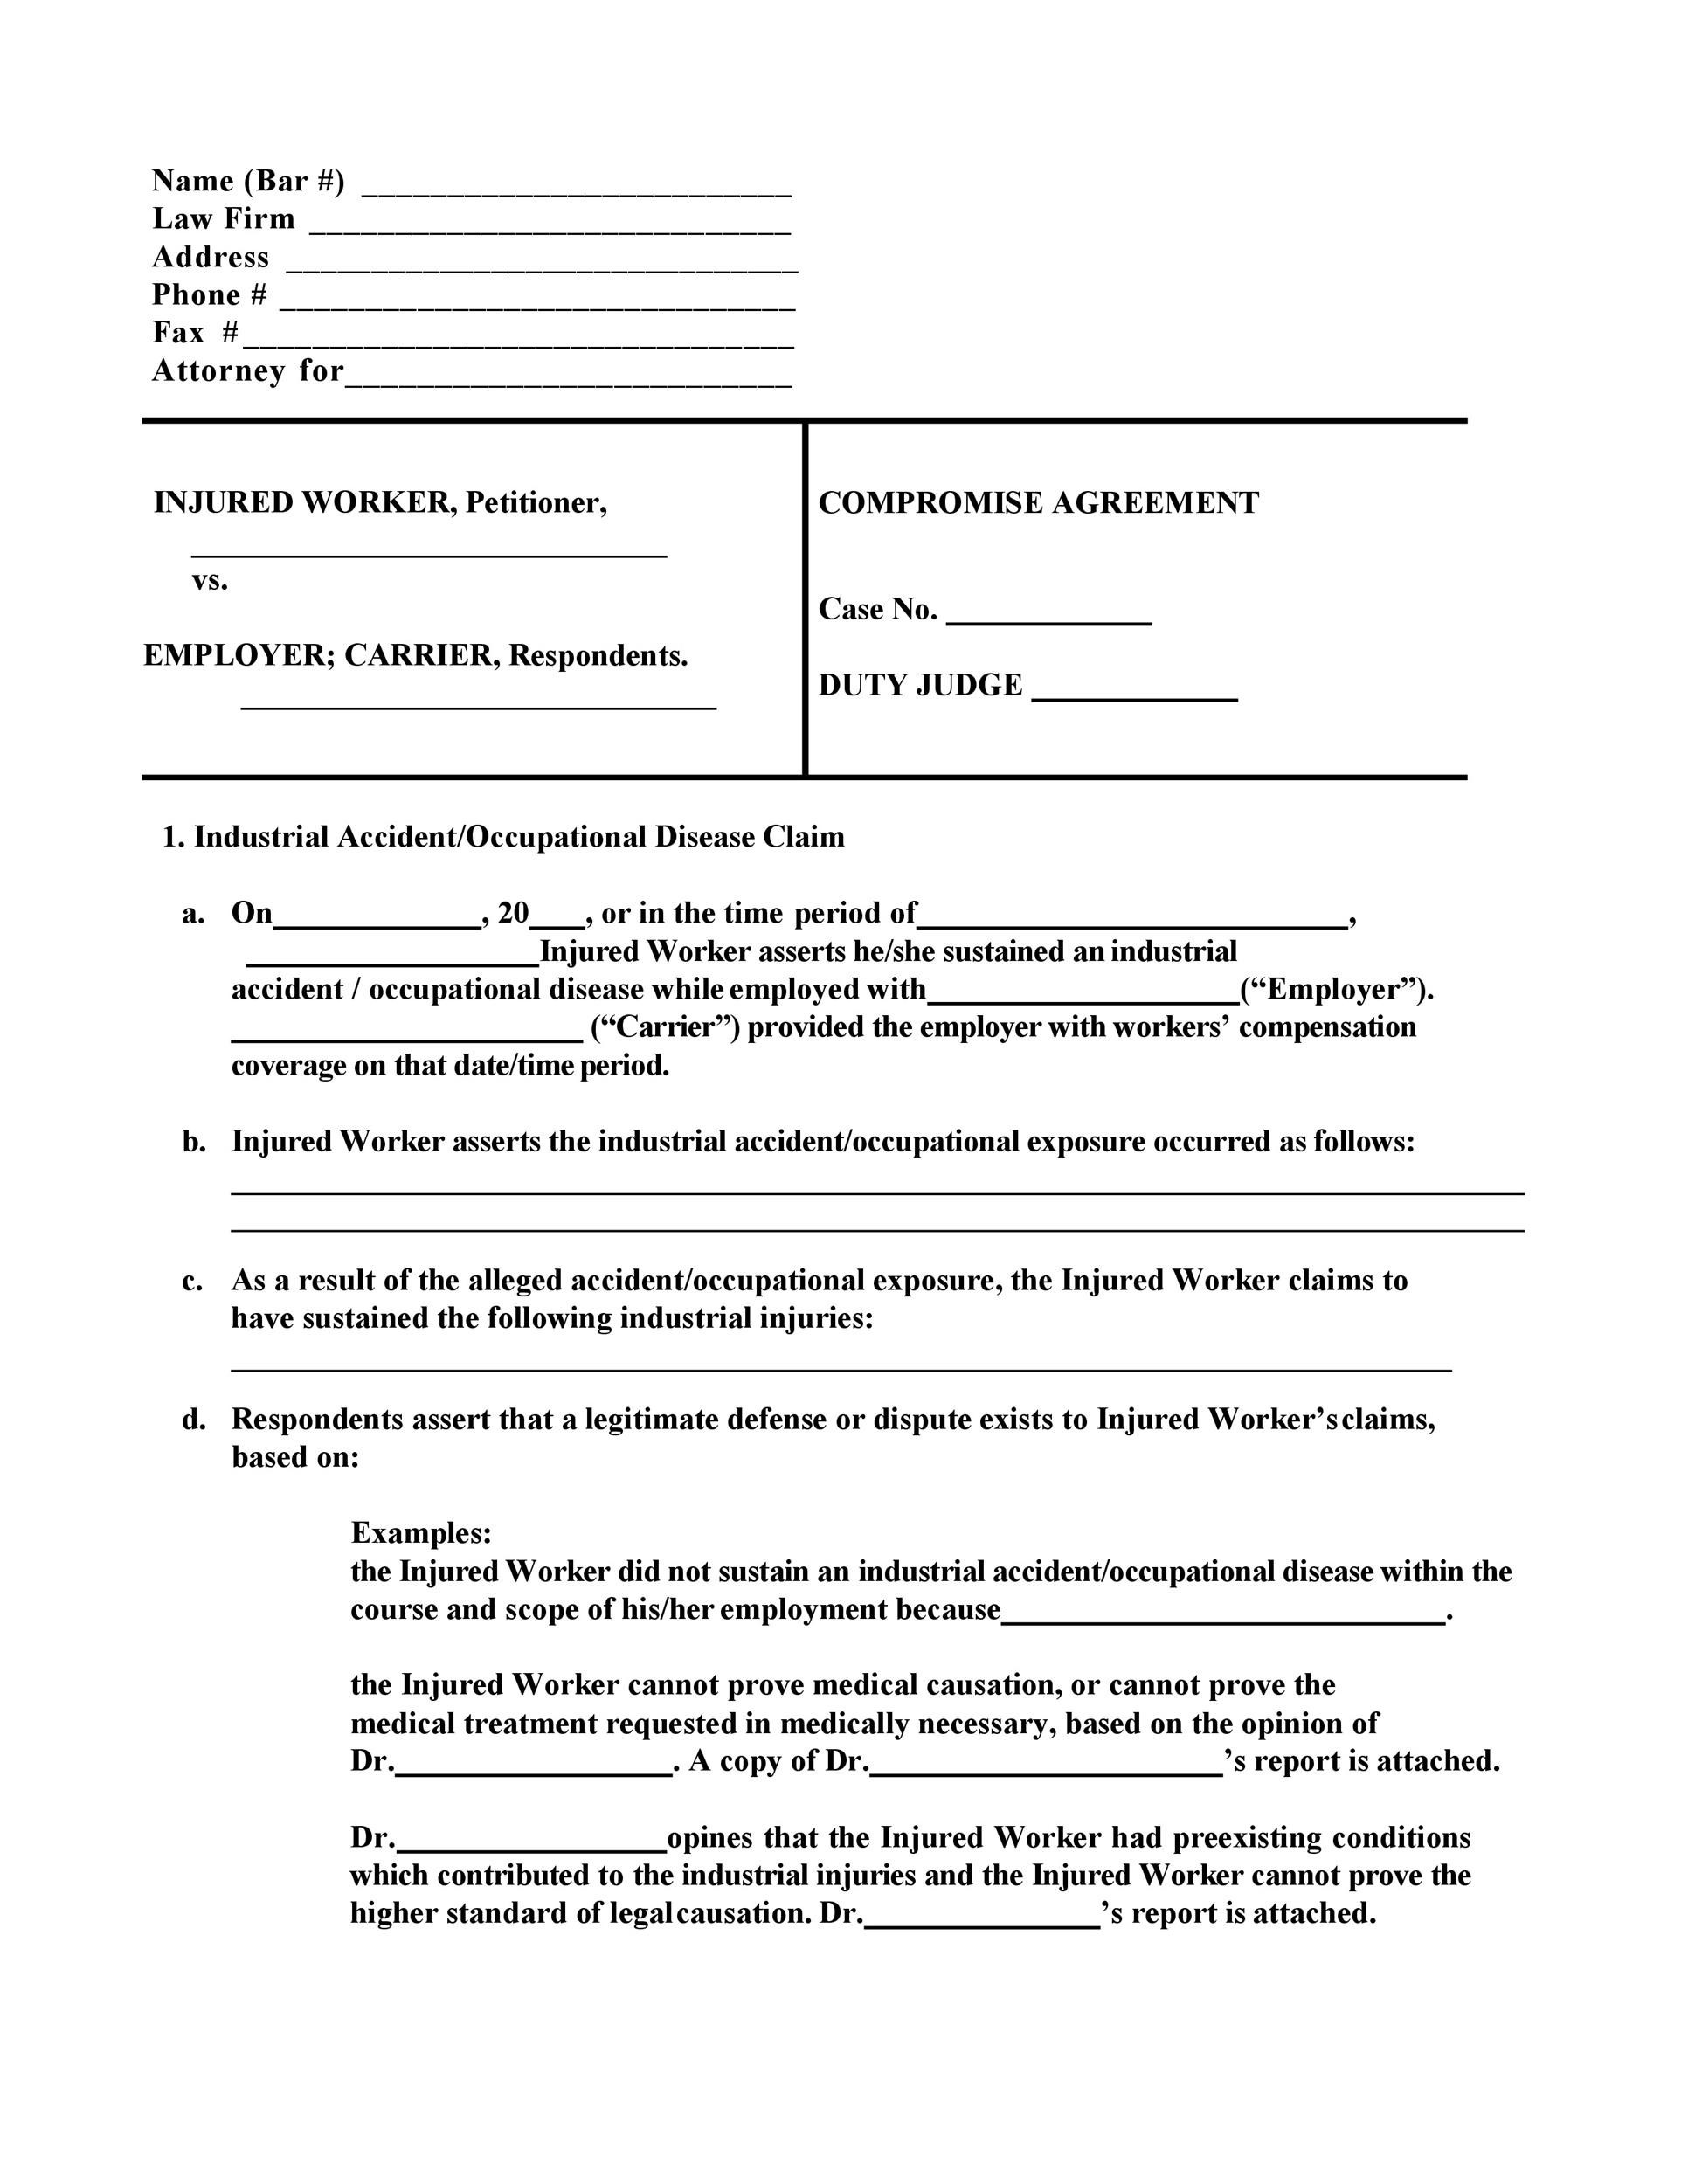 Free settlement agreement 40